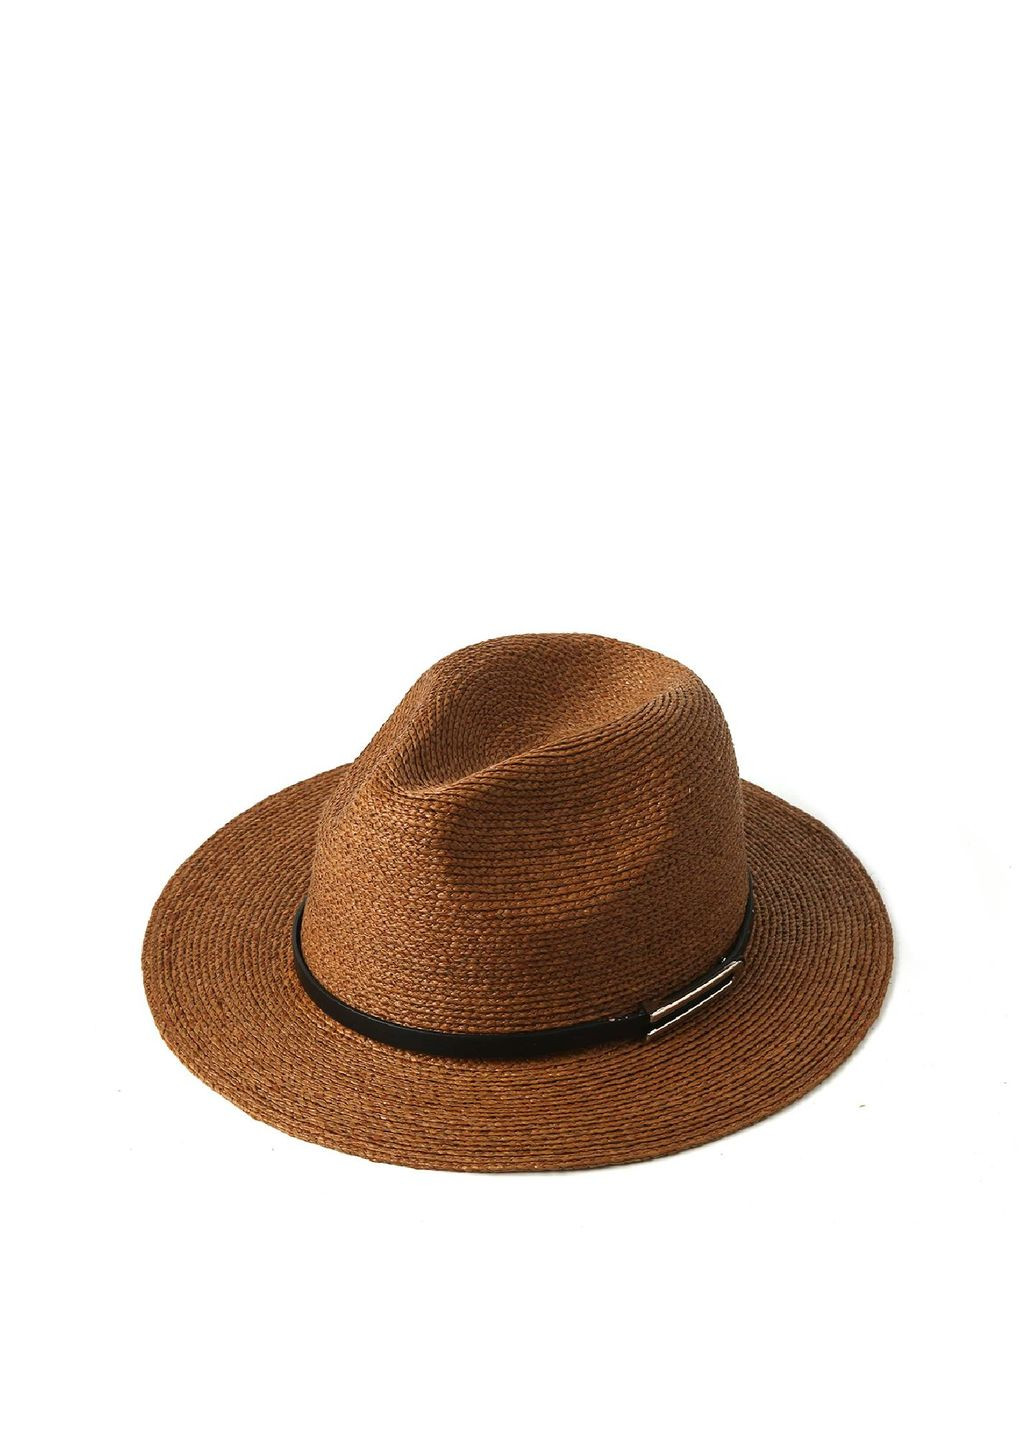 Шляпа федора женская рафия коричневая KELLY LuckyLOOK 818-218 (289478313)